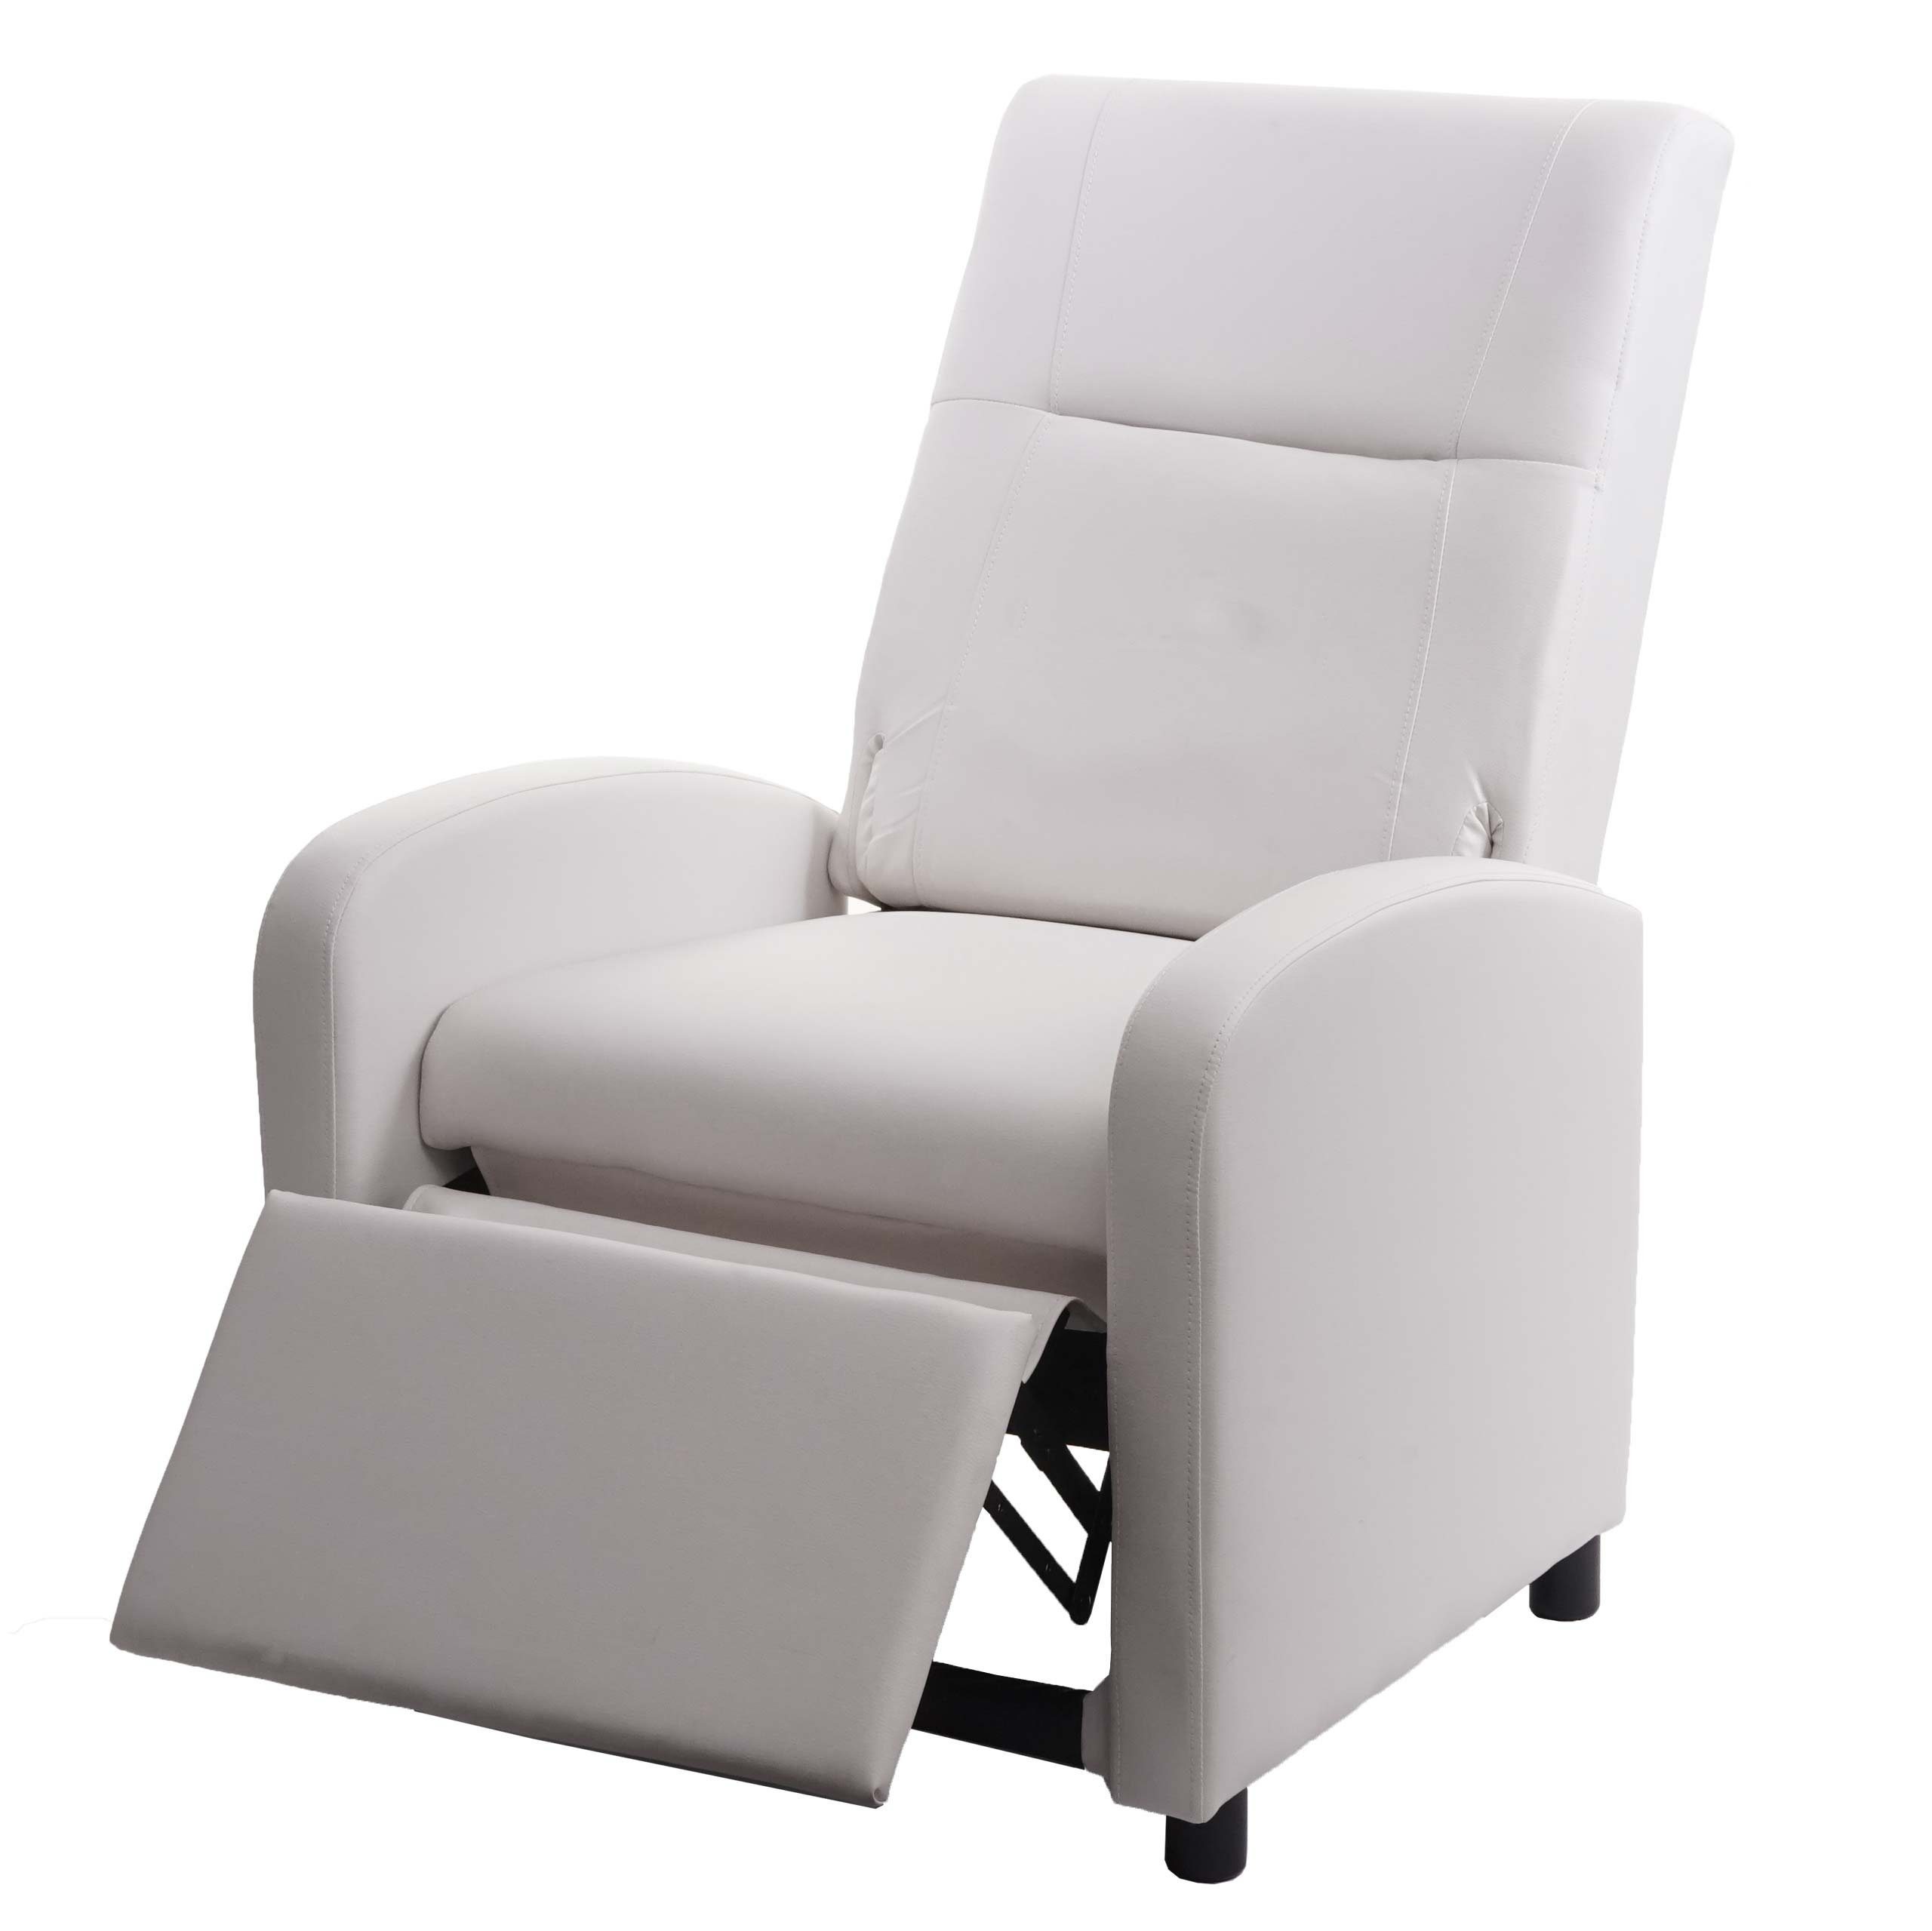 MCW TV-Sessel MCW-H18, Synchrone der Verstellung der Rücken- Verstellung und Rückenlehne Fußlehne, Klappbare Rücken- Fußlehne, Synchrone weiß und